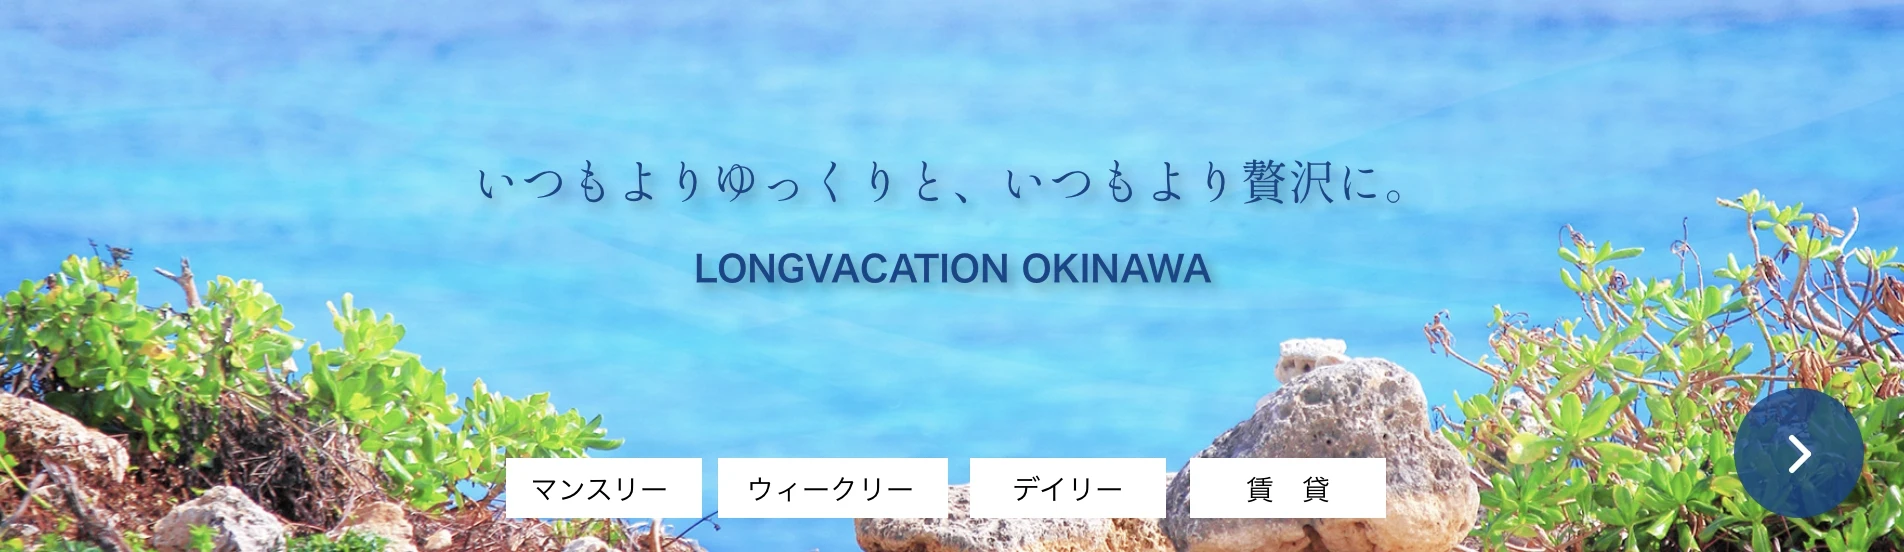 ロングバケーション沖縄